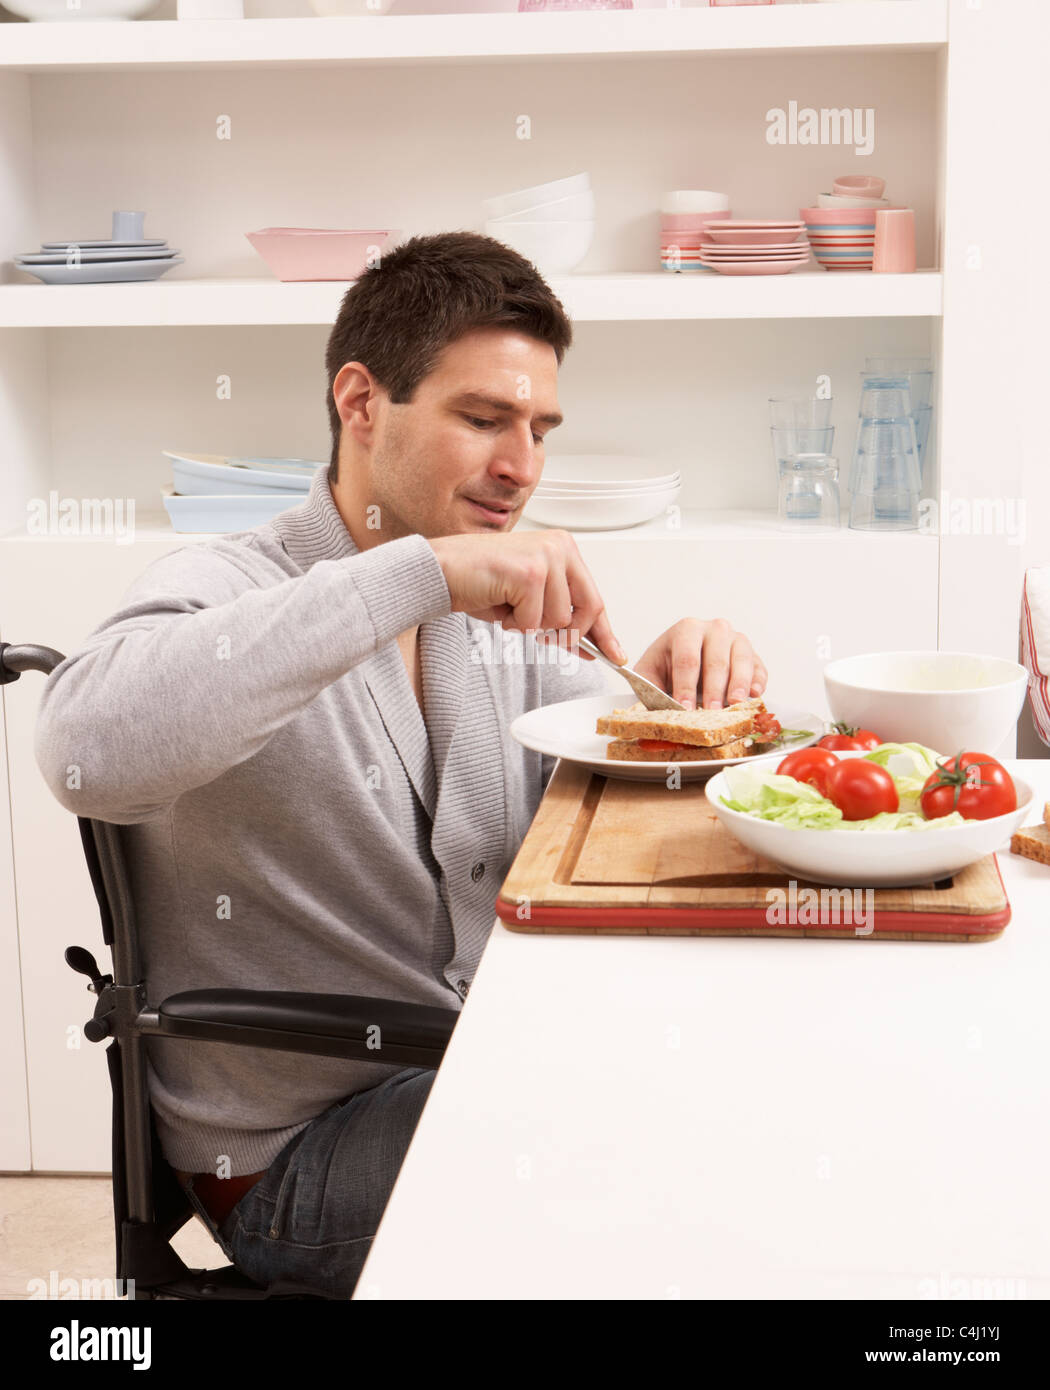 Behinderte Mensch macht In Küche Sandwich Stockfoto